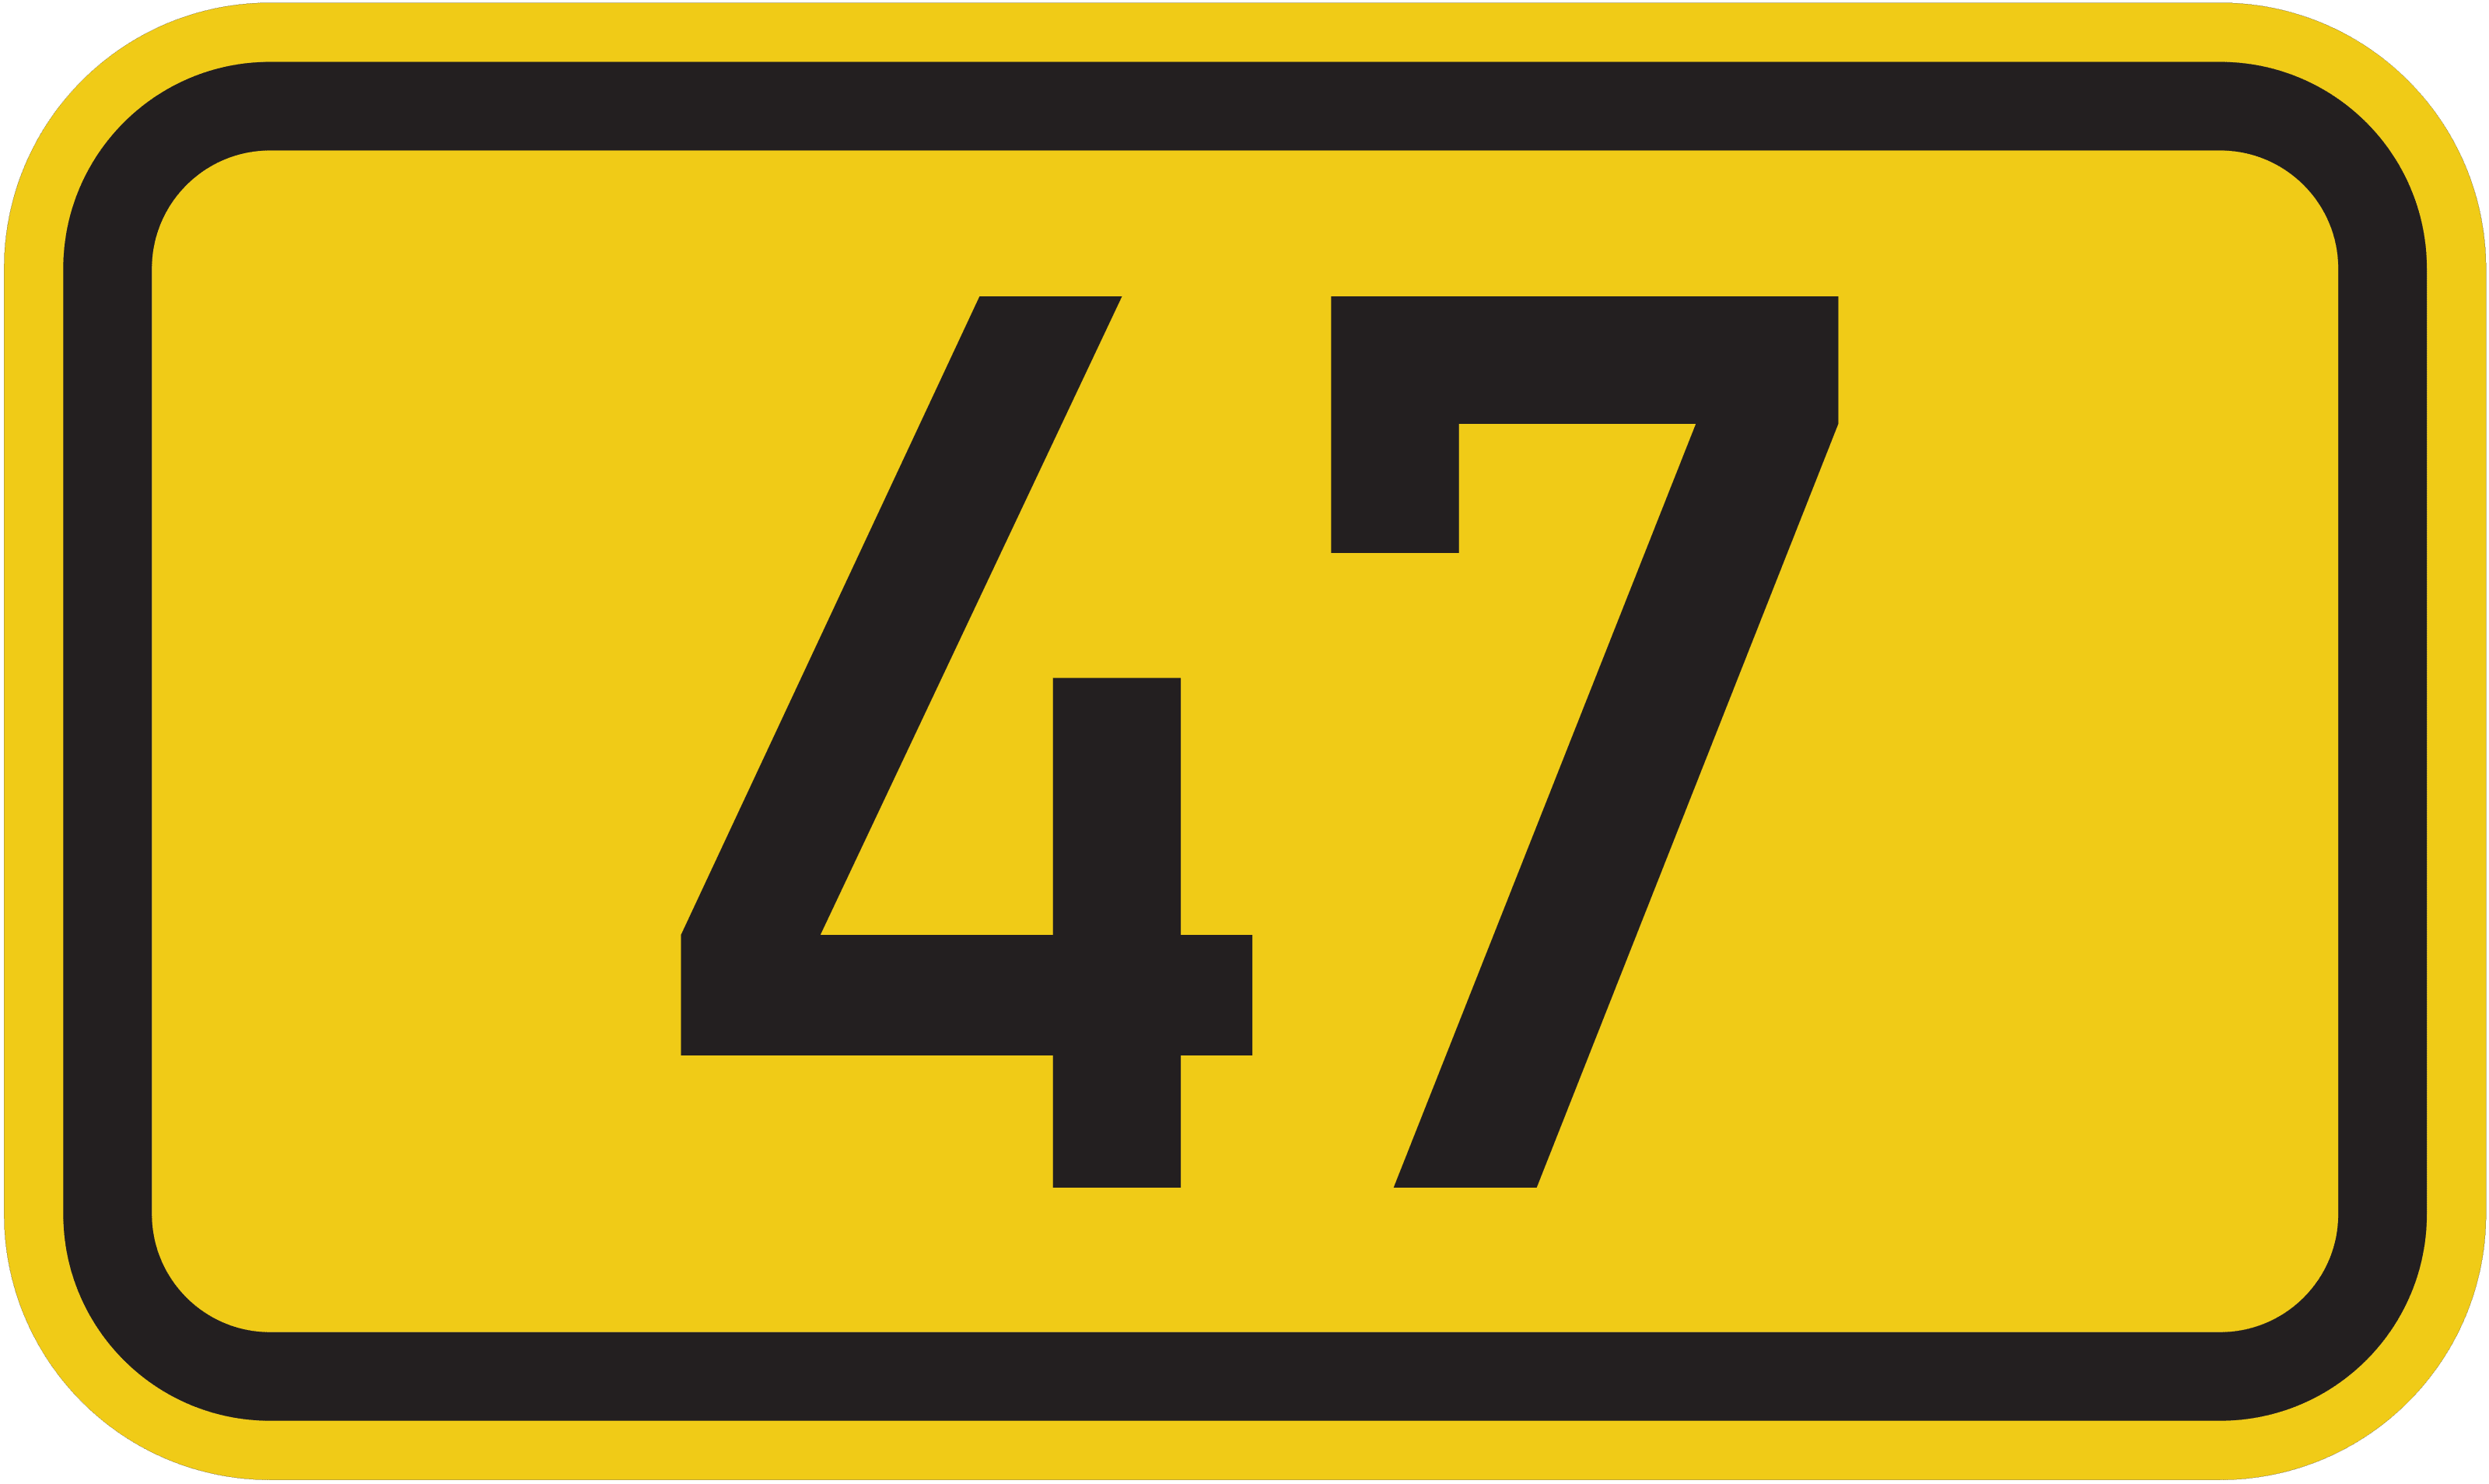 Bundesstraße B 47